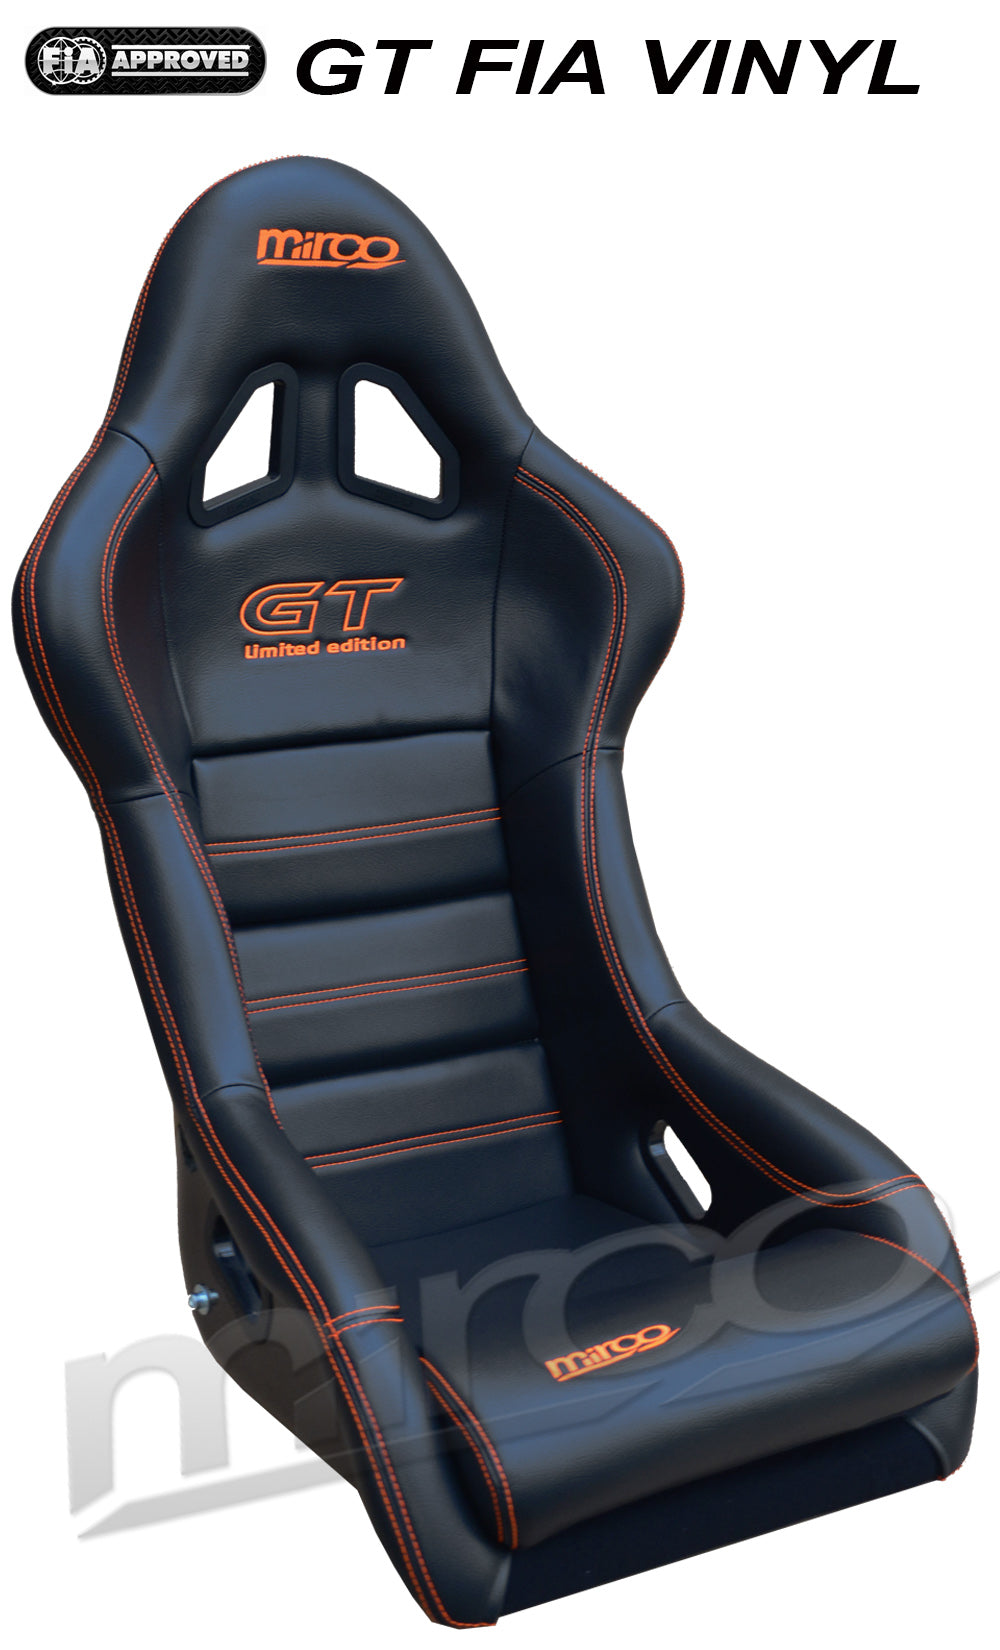 mirco seat GT